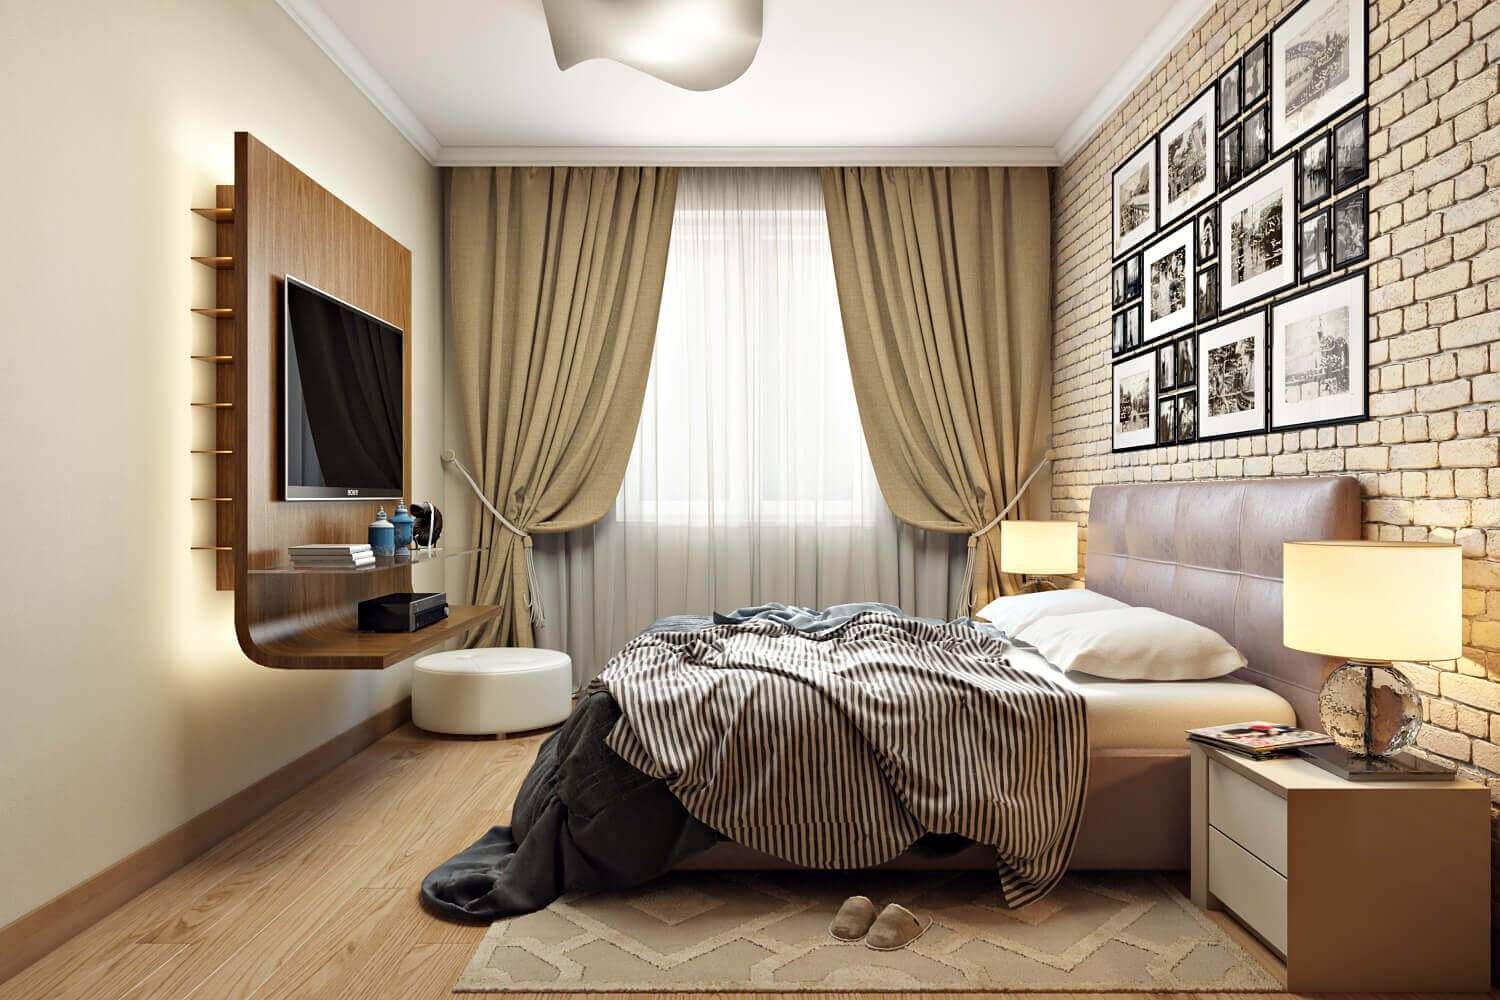 60+ красивых идей дизайна узкой спальни (фото)